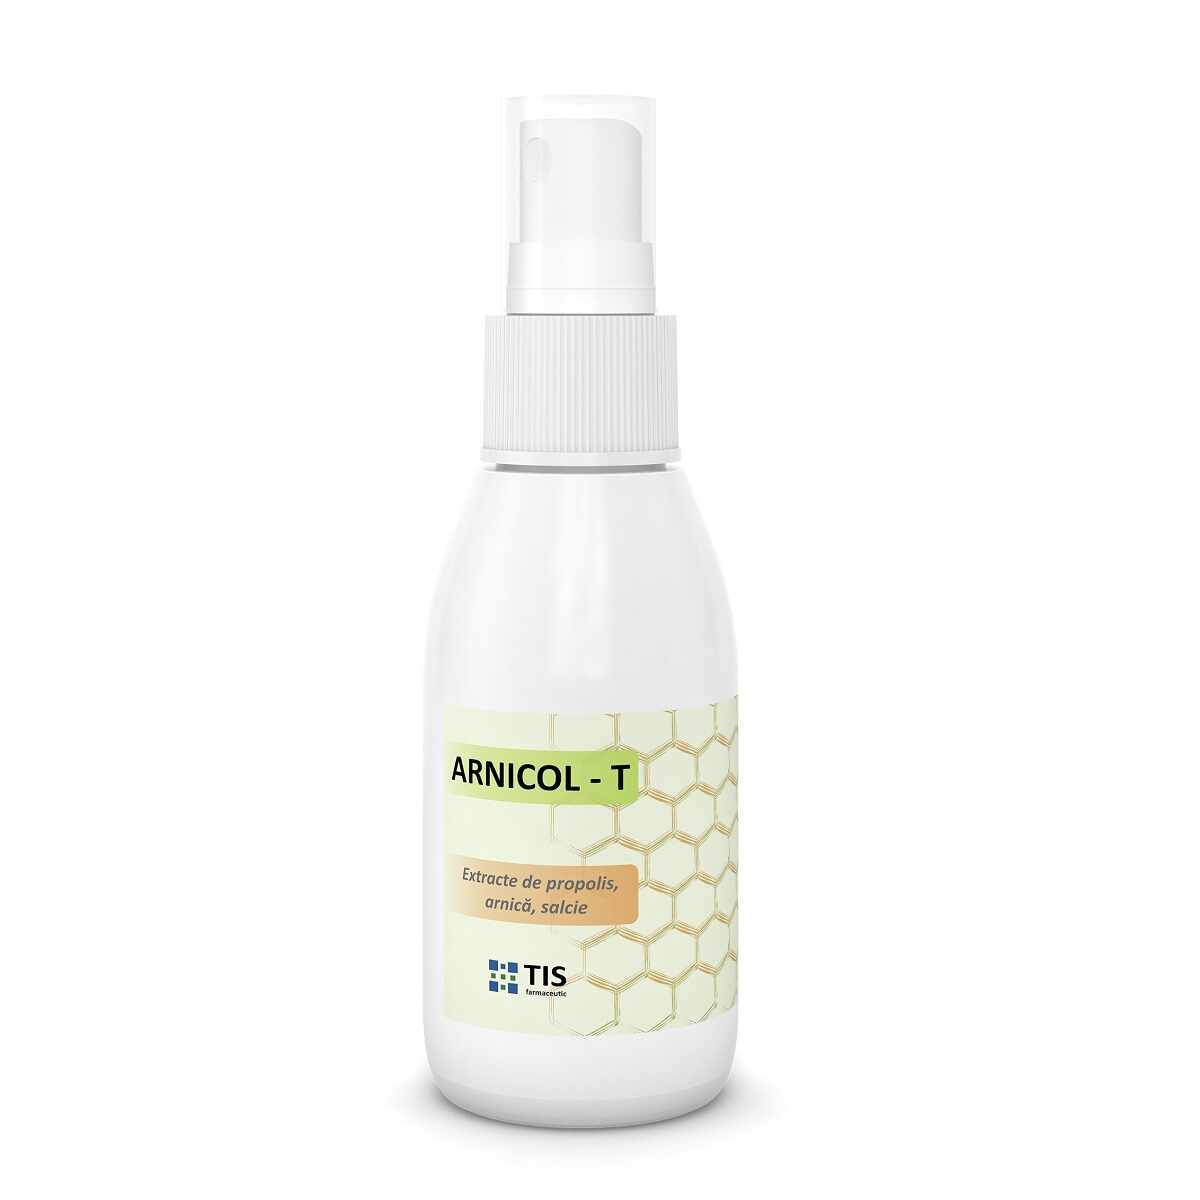 Solutie antiacneica Arnicol-T, 50ml, Tis Farmaceutic